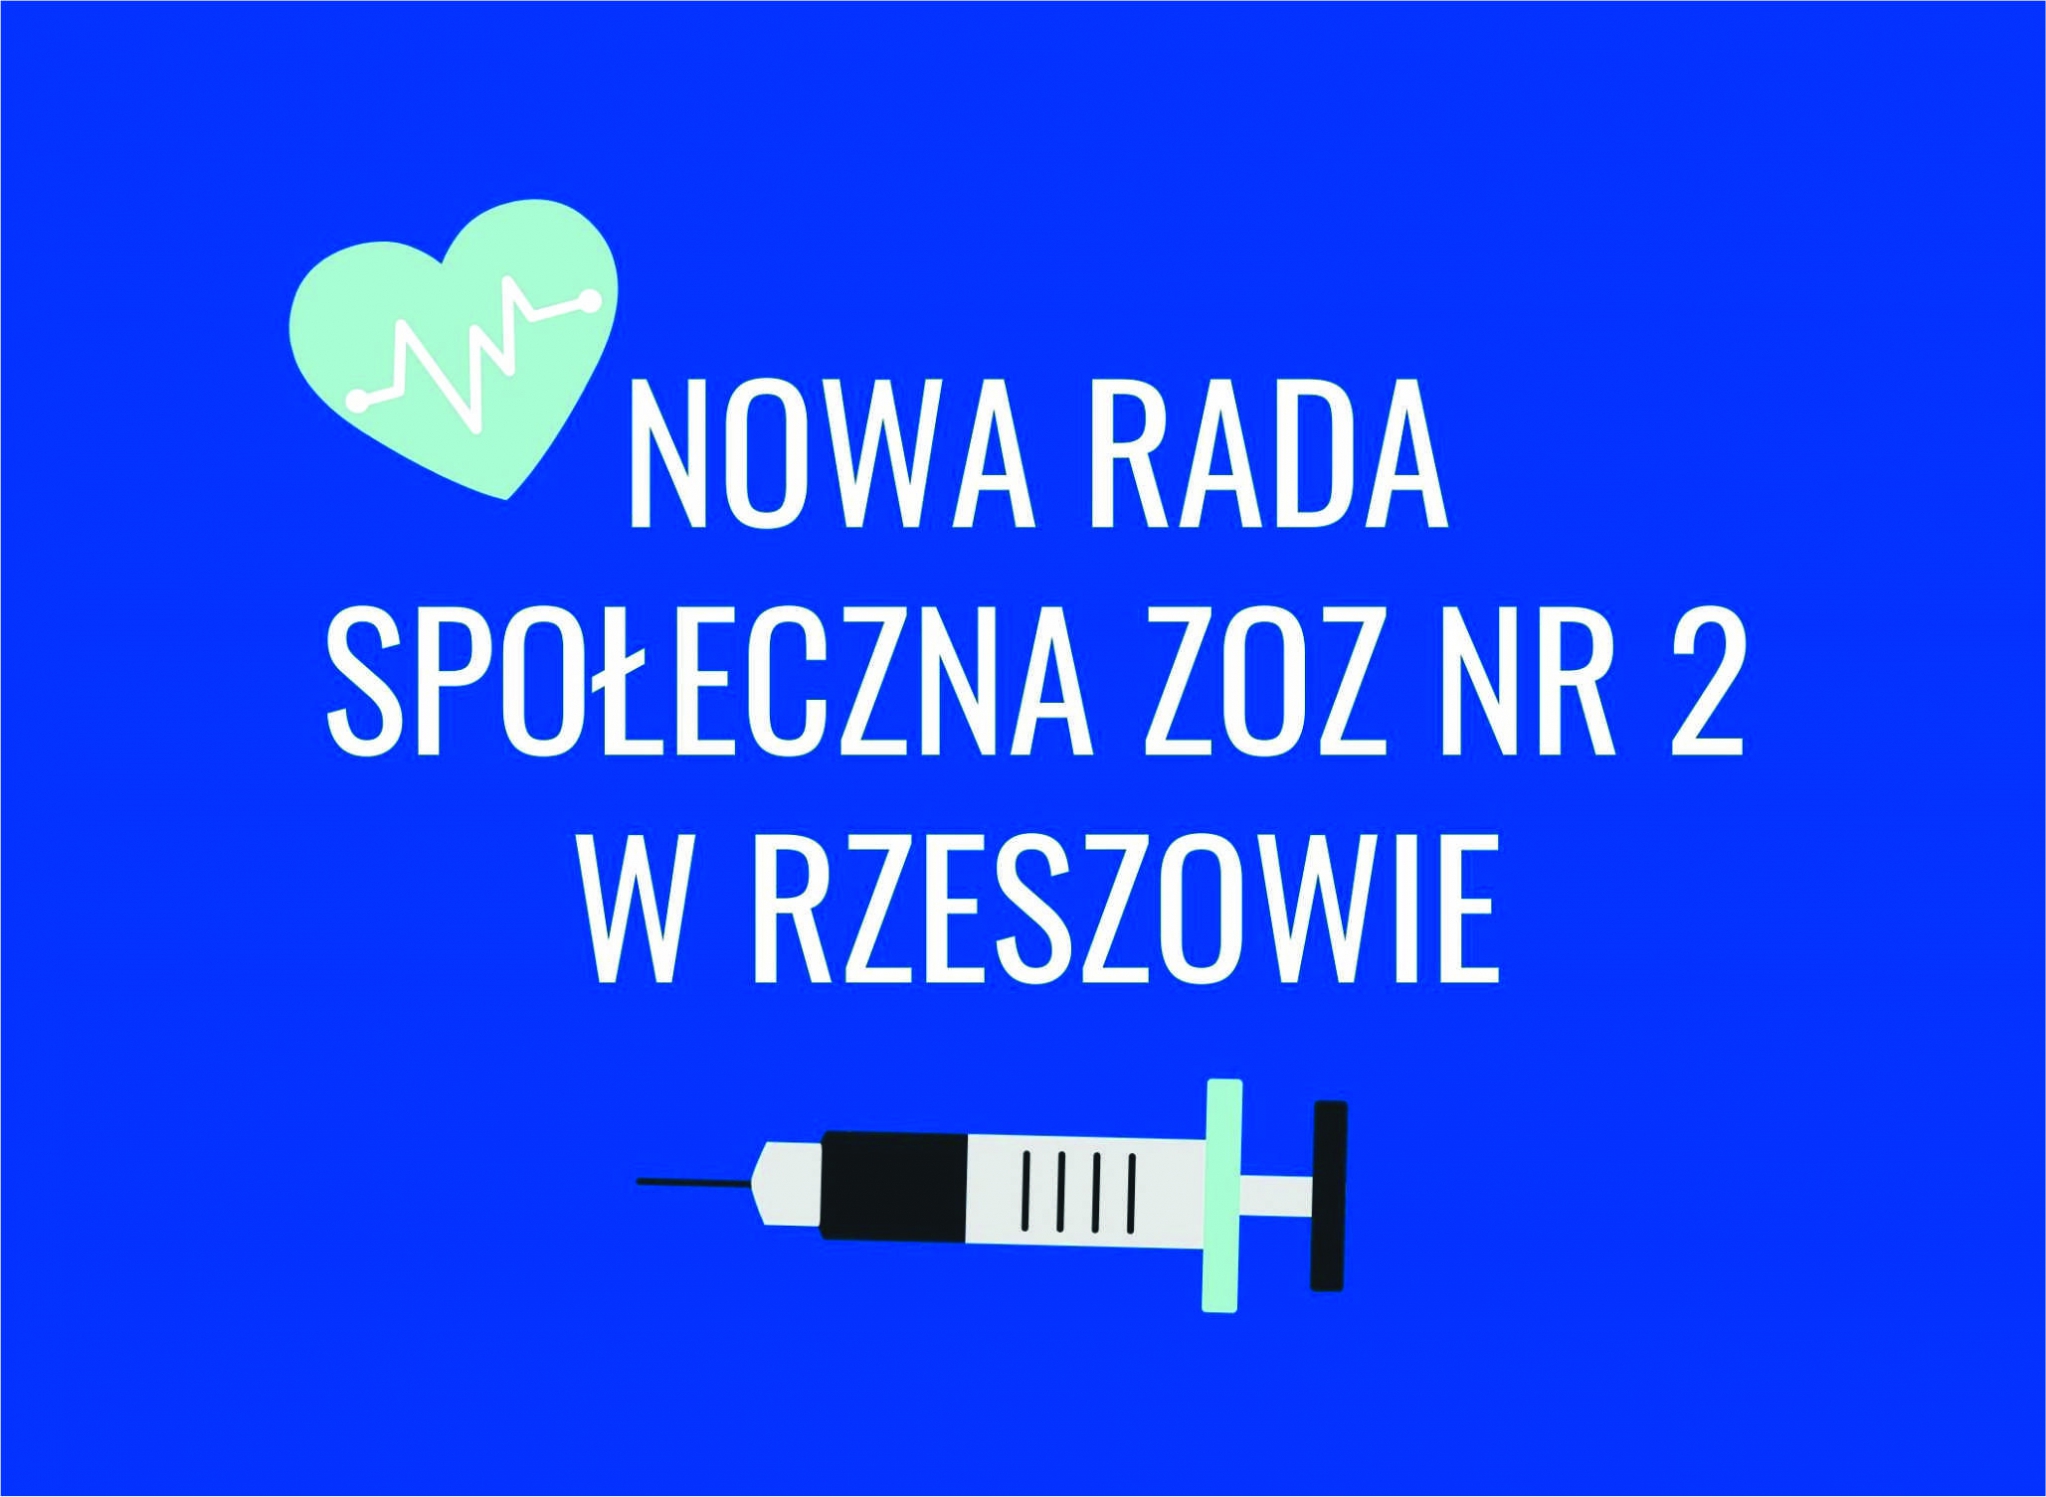 https://powiat.rzeszowski.pl/blog/2021/02/19/nowa-rada-spoleczna-zoz-nr2-w-rzeszowie/nowa-rada-spoleczna-zoz-nr2-w-rzeszowie-jpg/